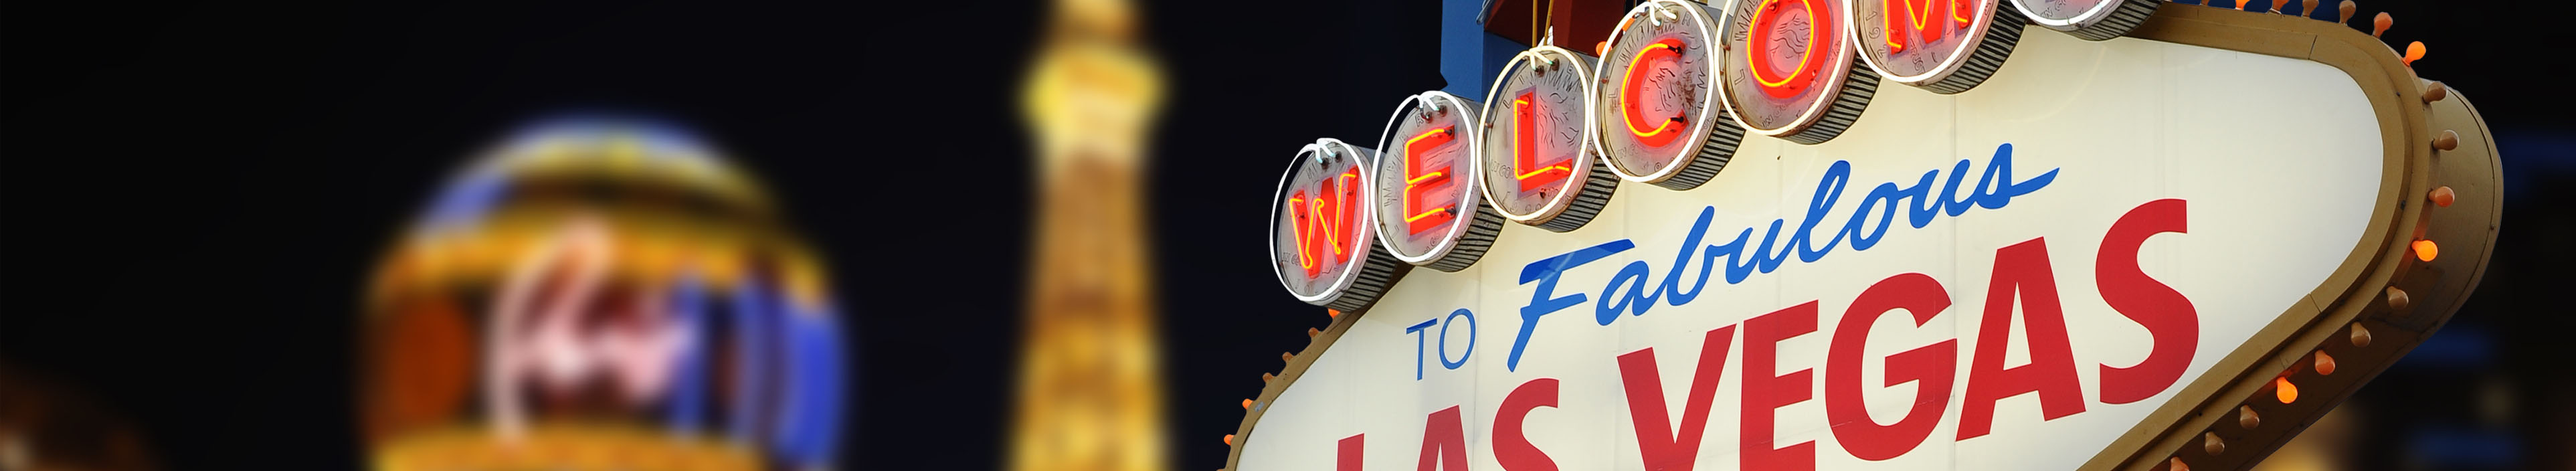 Las Vegas Sign und Hotel Paris